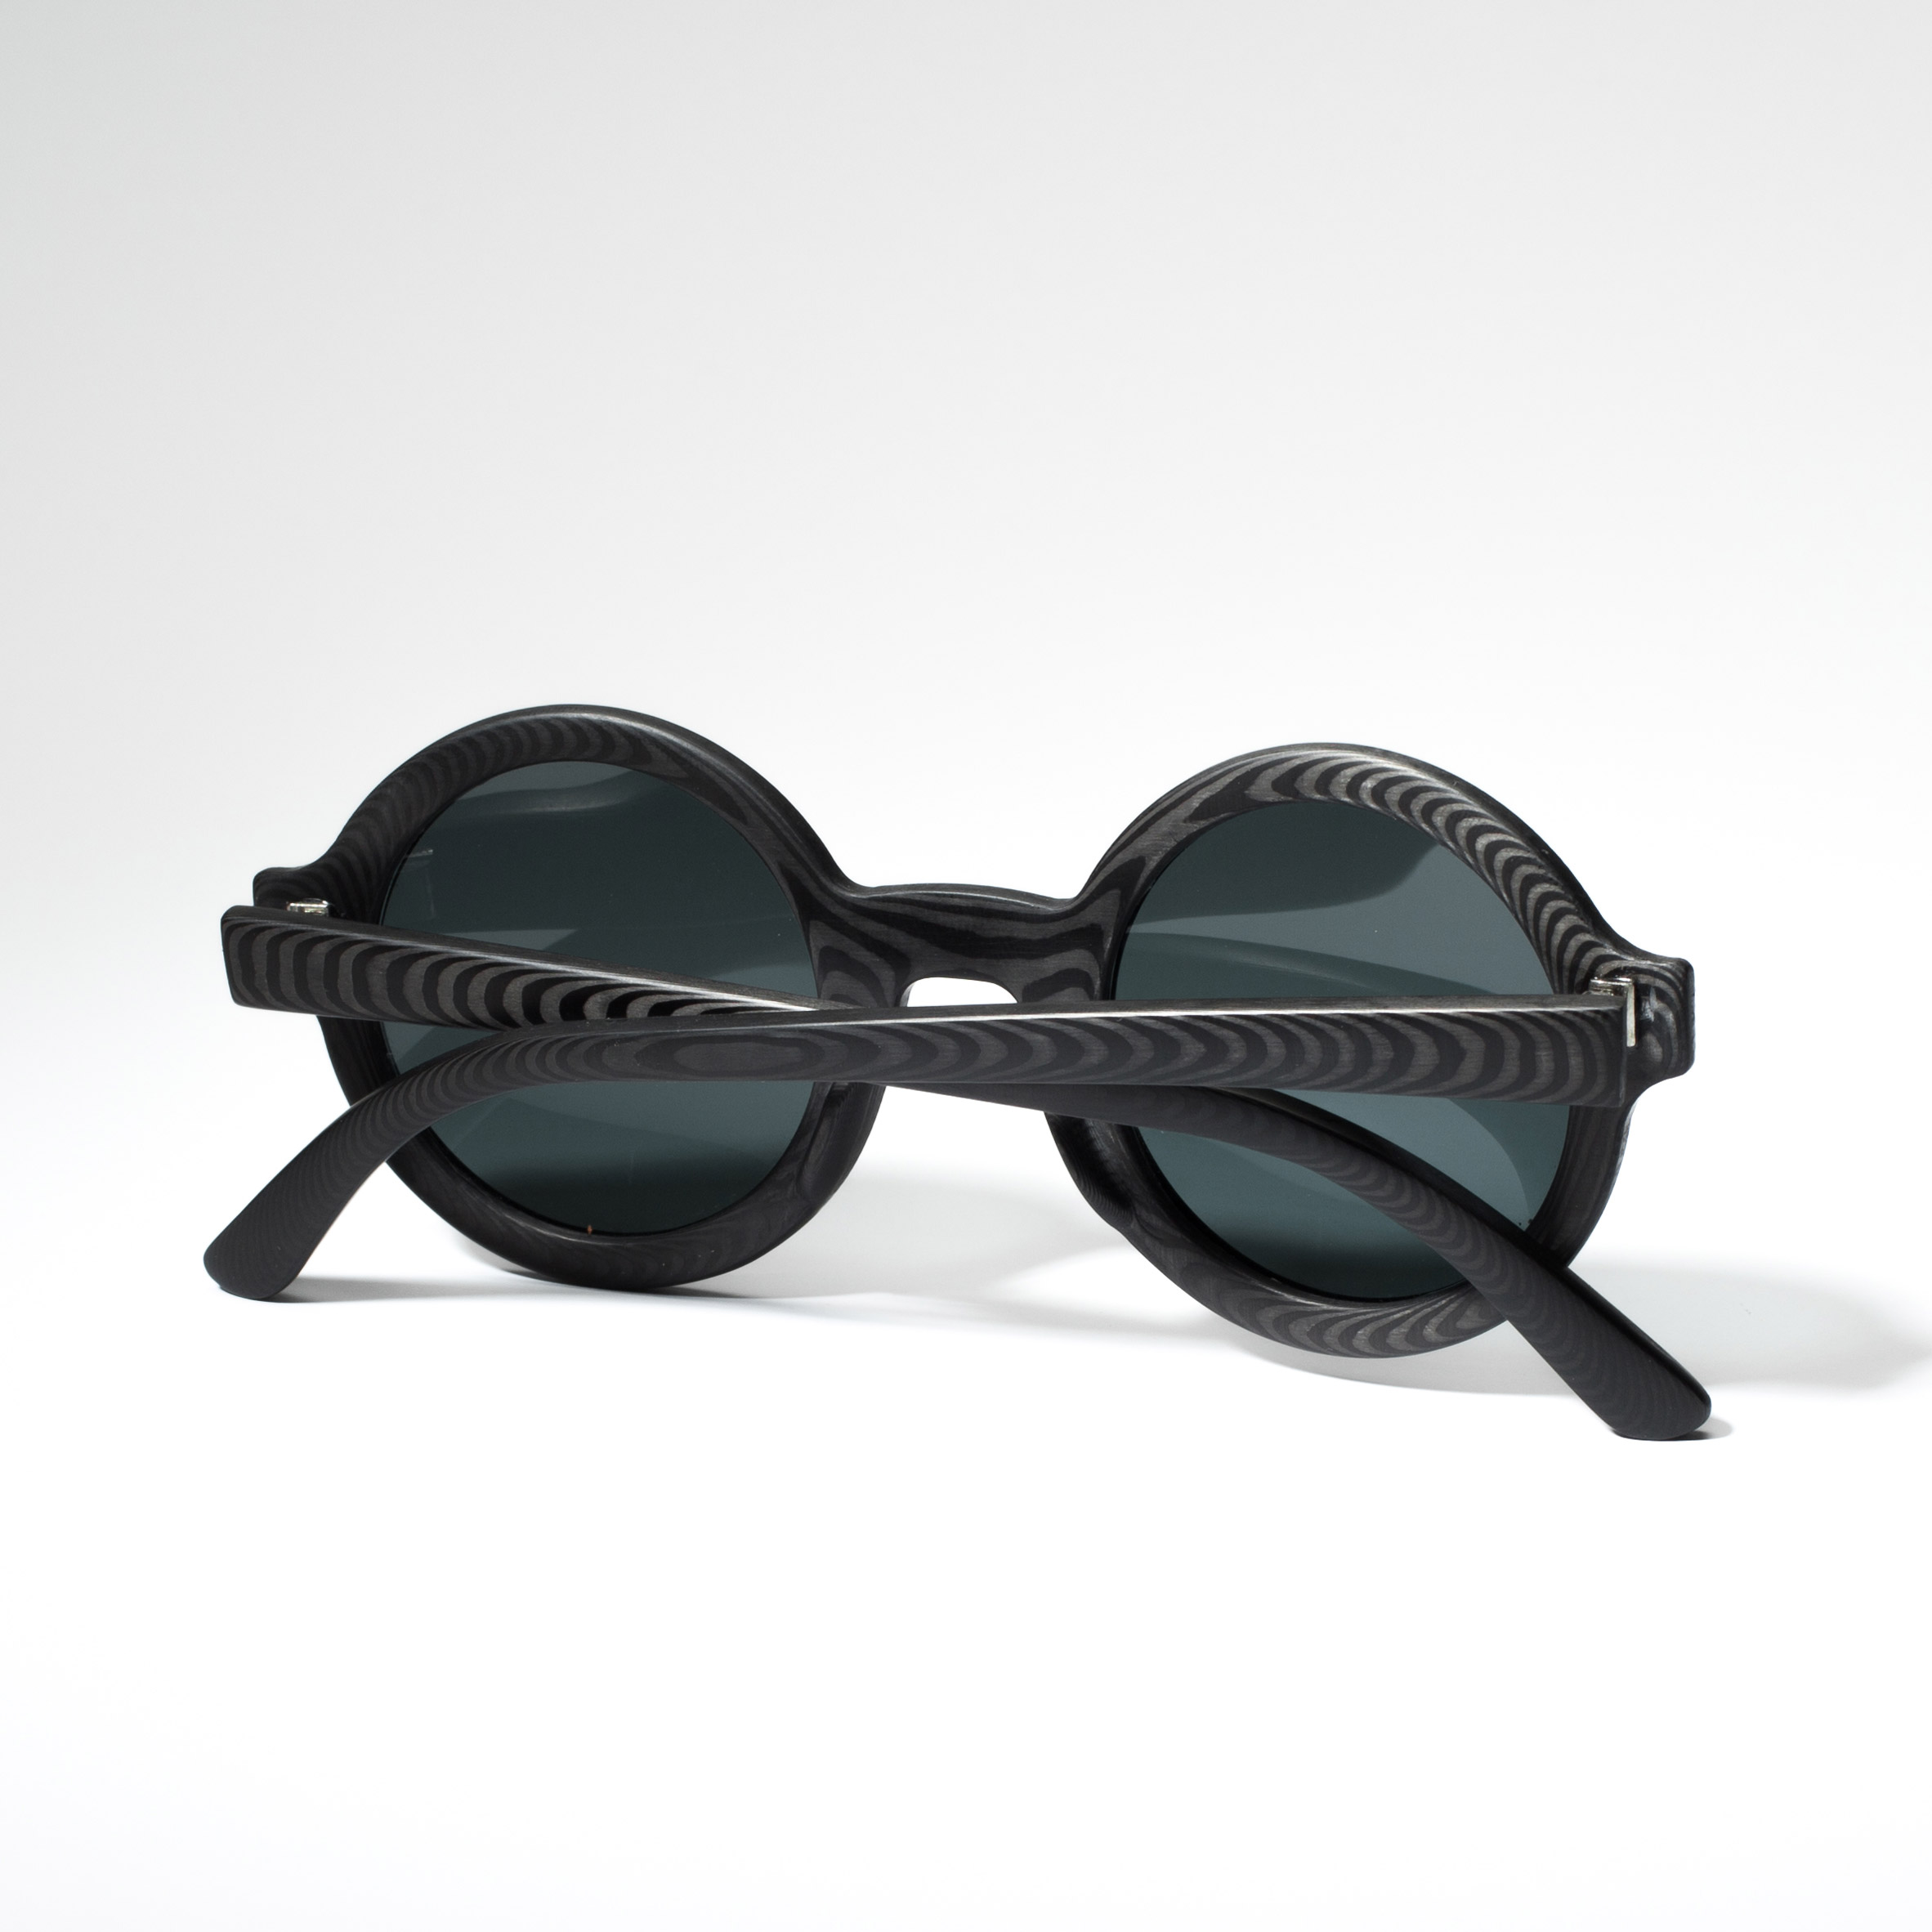 Rodrigo Caula designs carbon-fibre sunglasses with woodgrain patterns-3